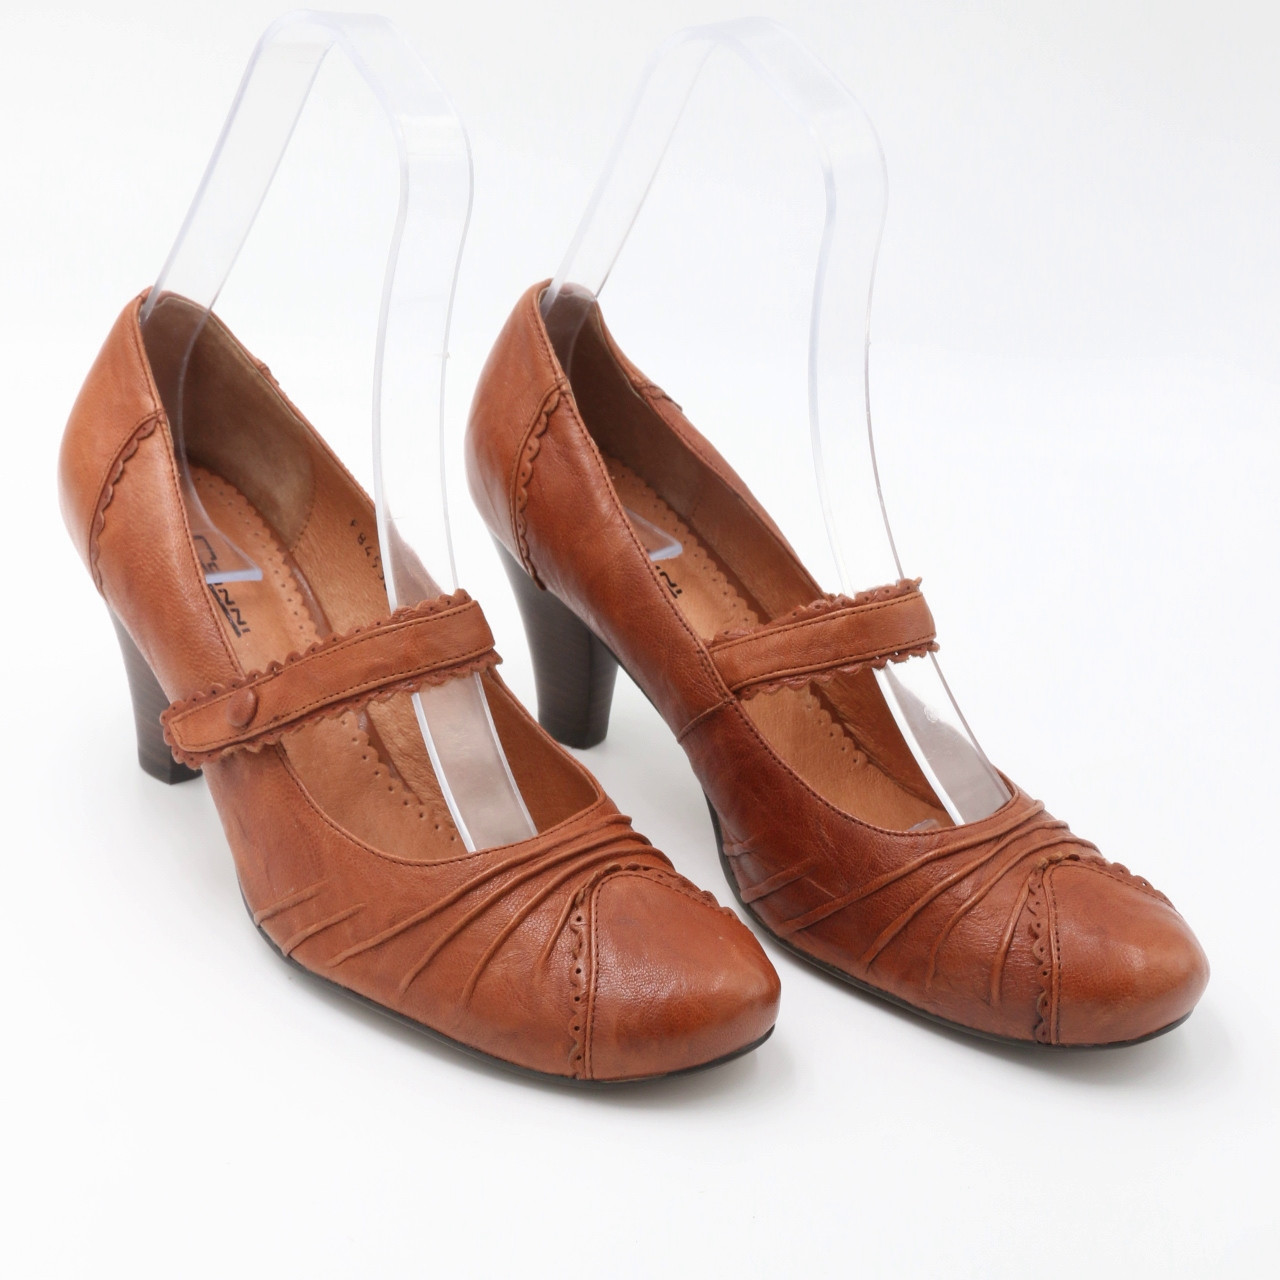 Туфлі жіночі класичні шкіряні на підборах 7.5 см світло-коричневі розміри 36.37.39 Conni код-(1770)